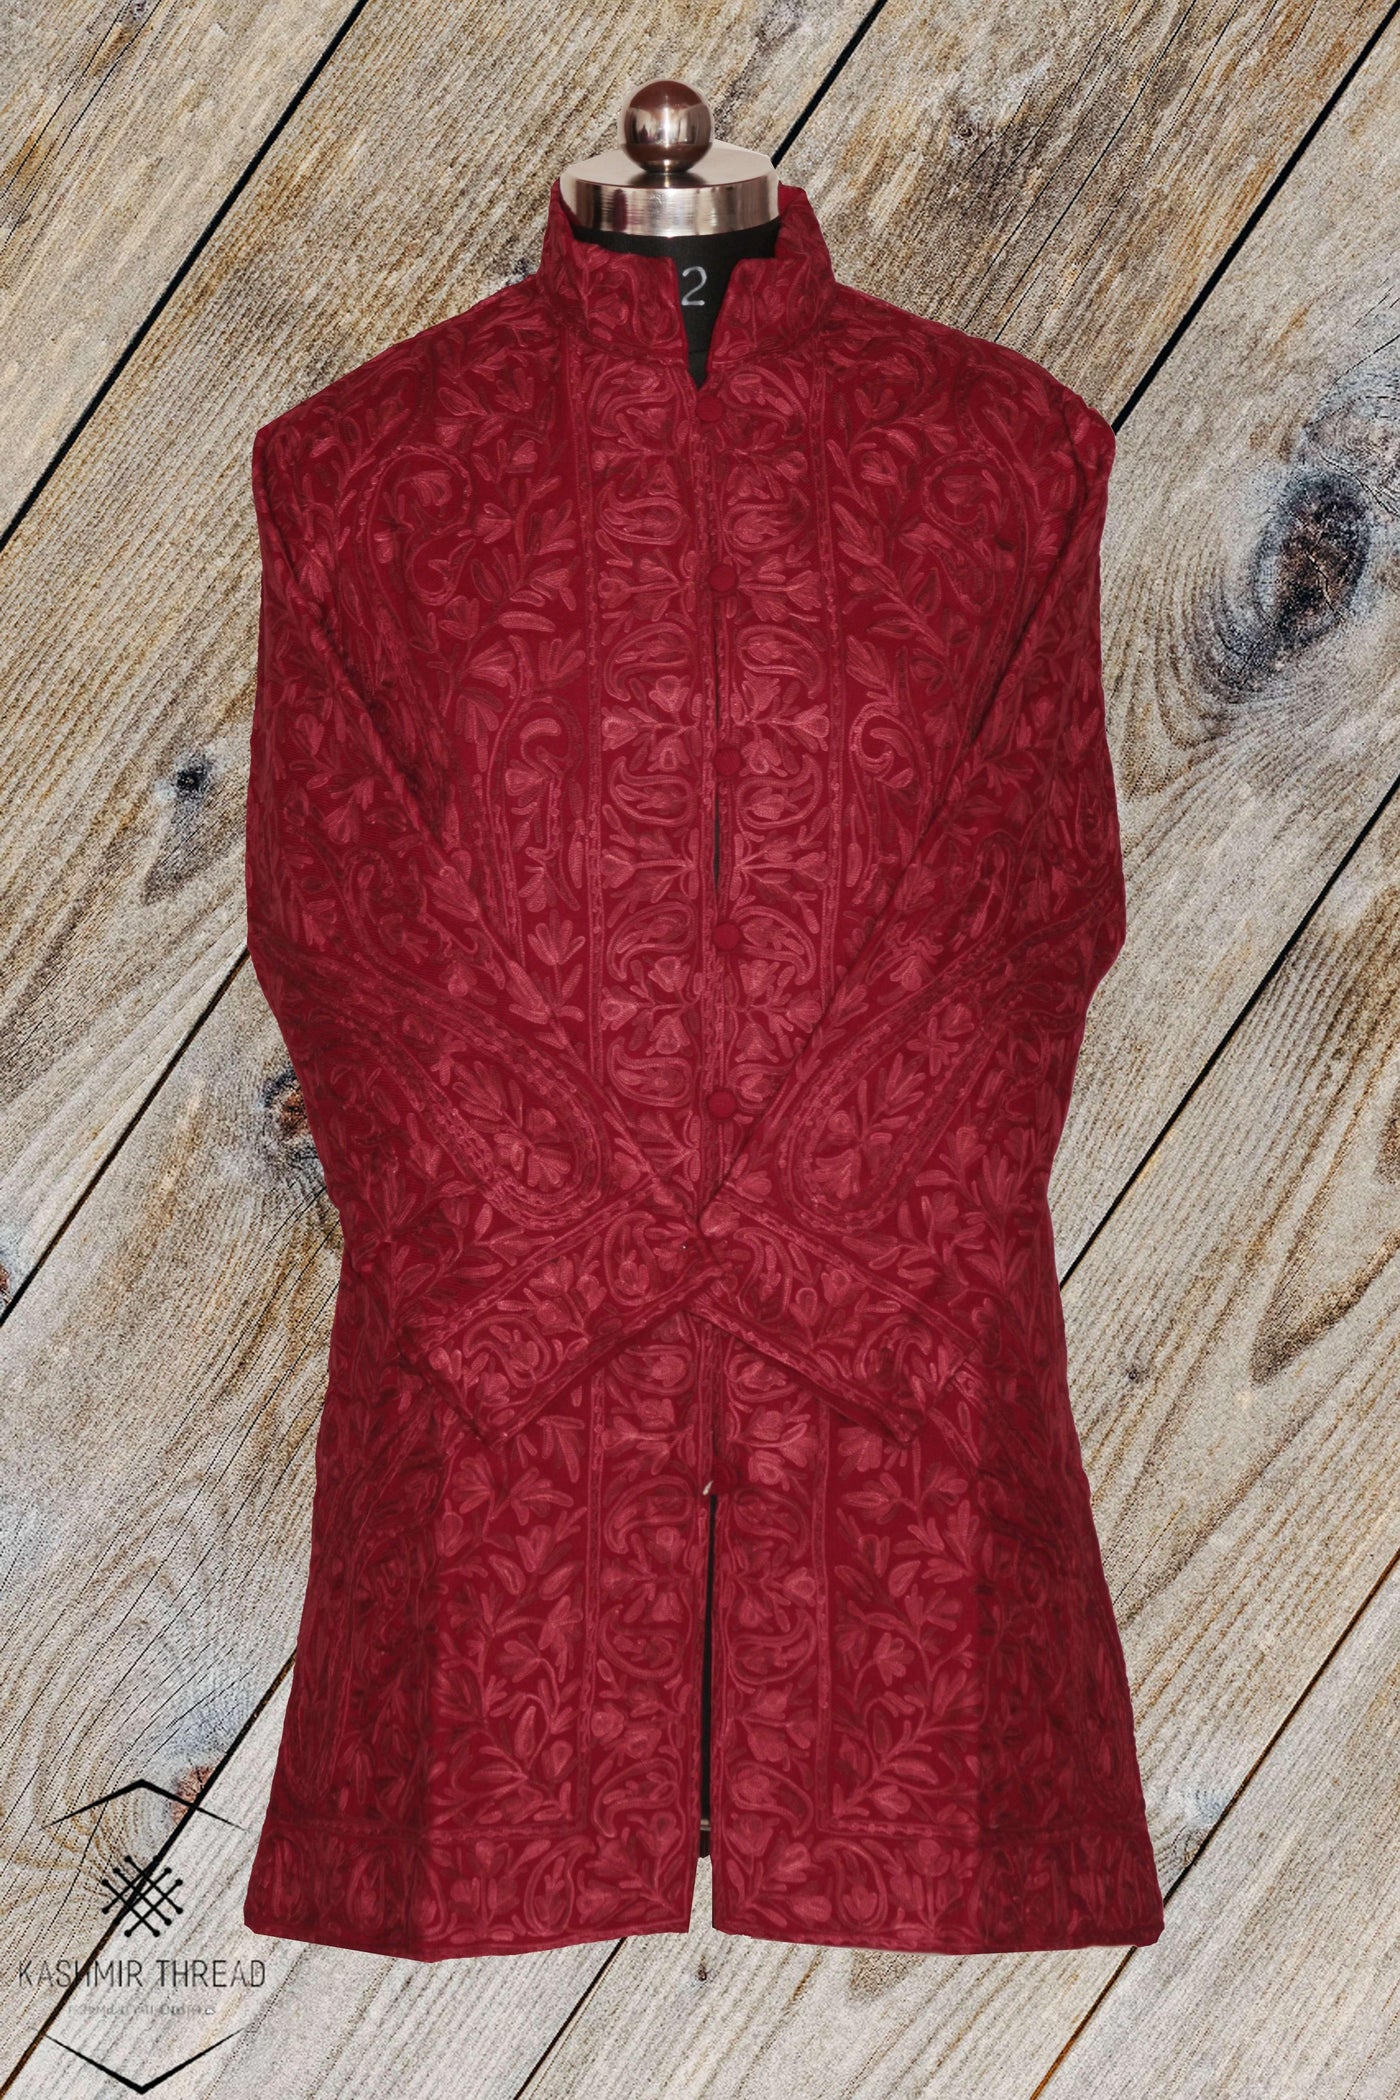 Kashmir Thread Coat XL (44) Red Kashmiri Woolen Jacket with Aari Embroidery